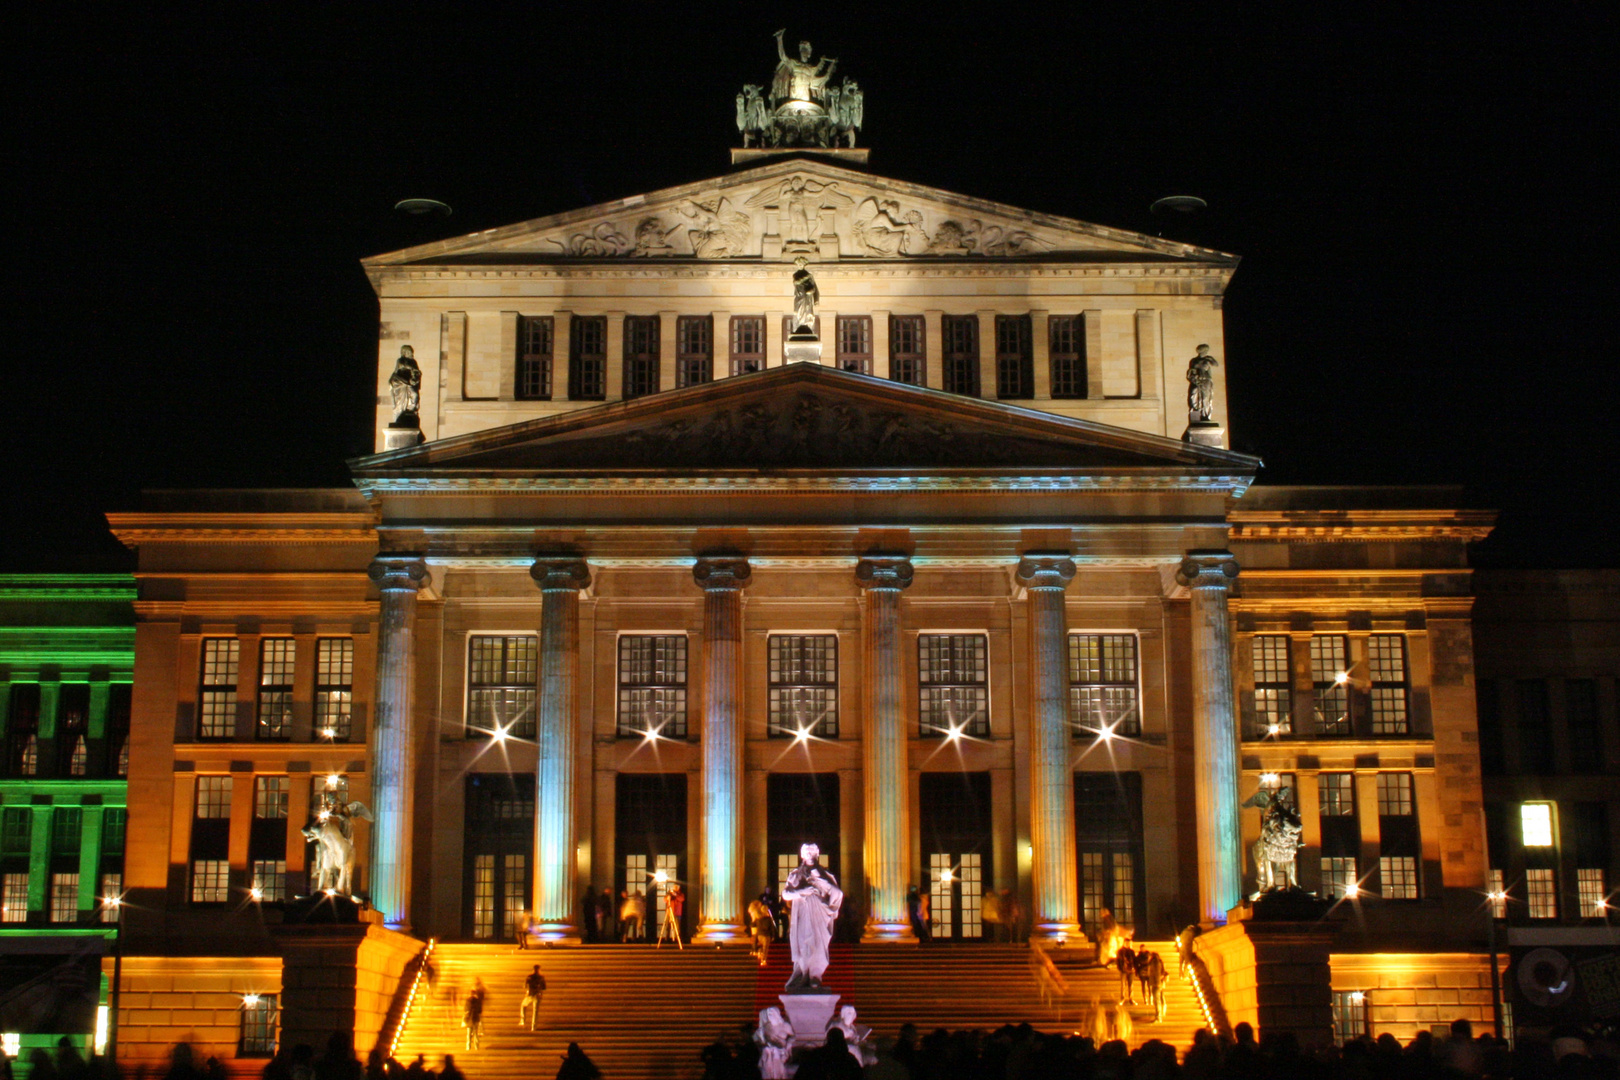 Festival of Lights 2011 in Berlin.